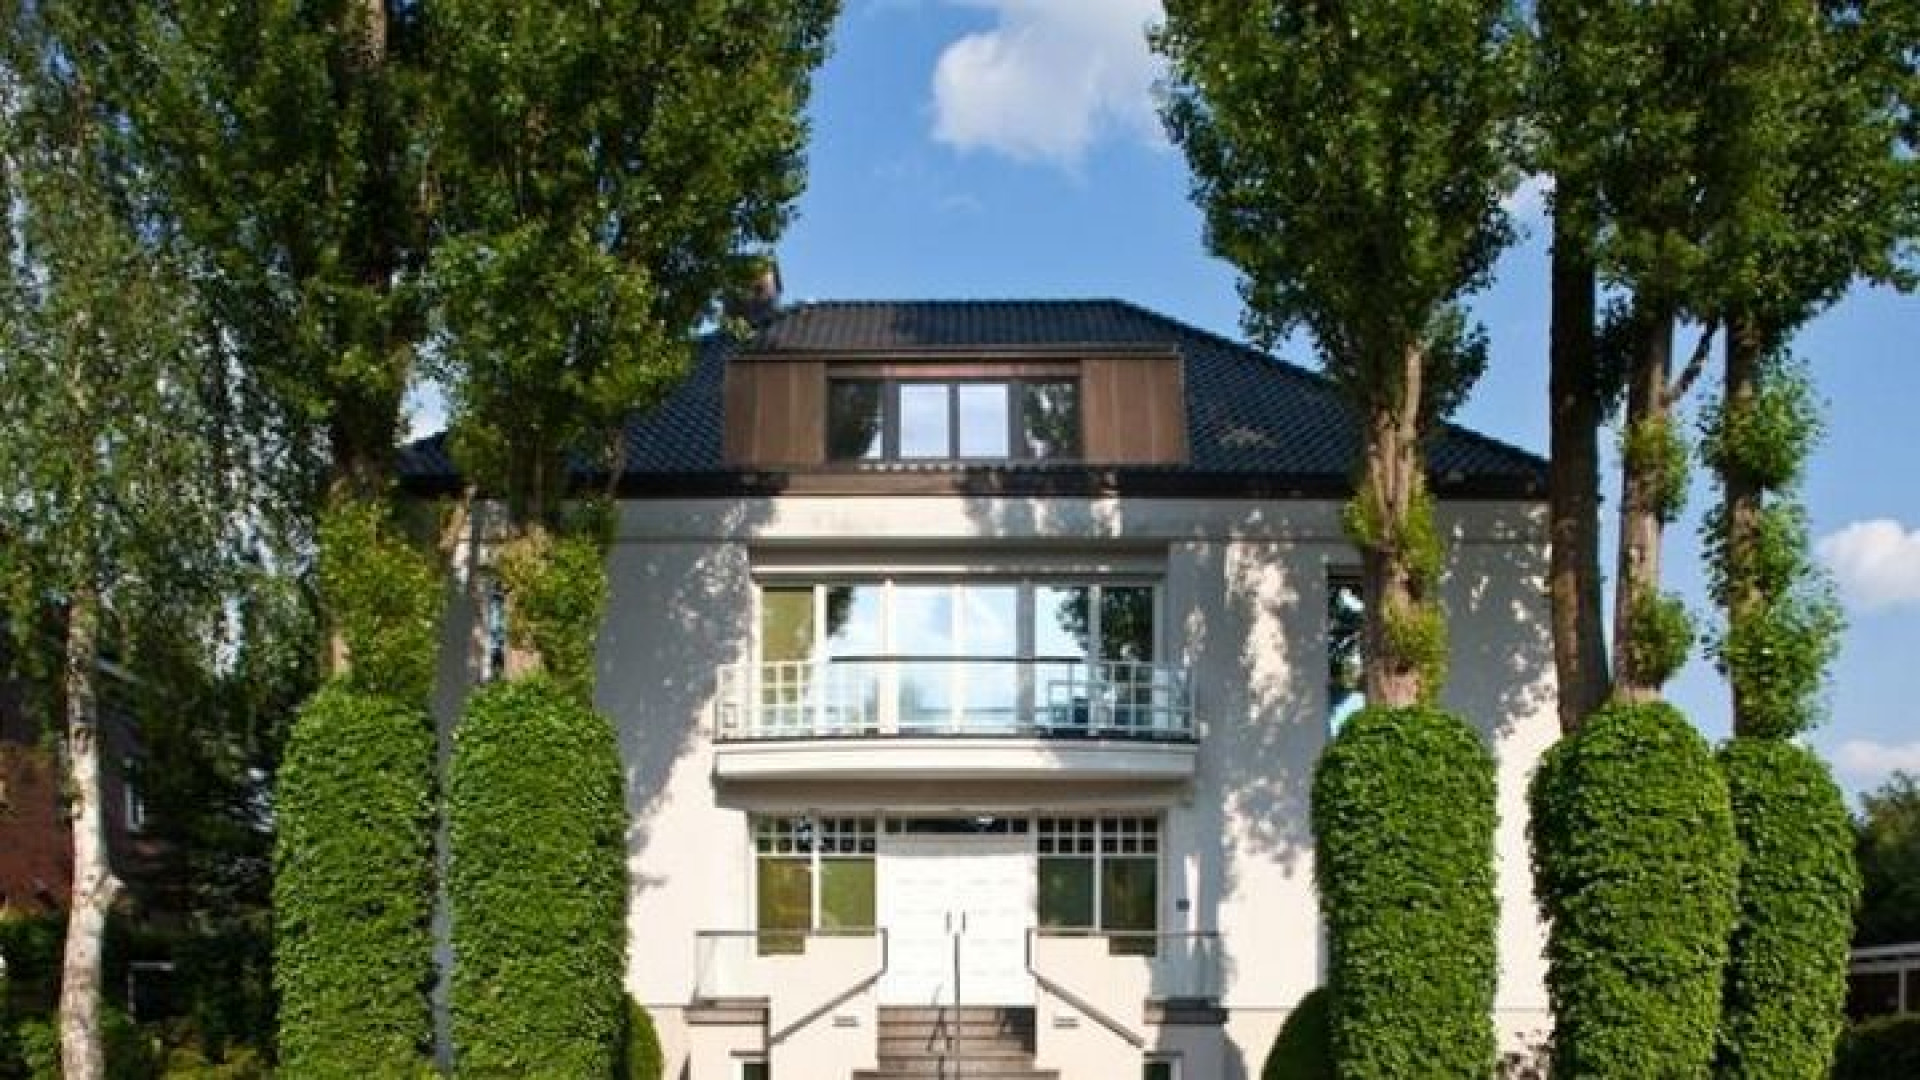 Huurprijs Hamburgse villa Sabia verlaagd. Zie foto's